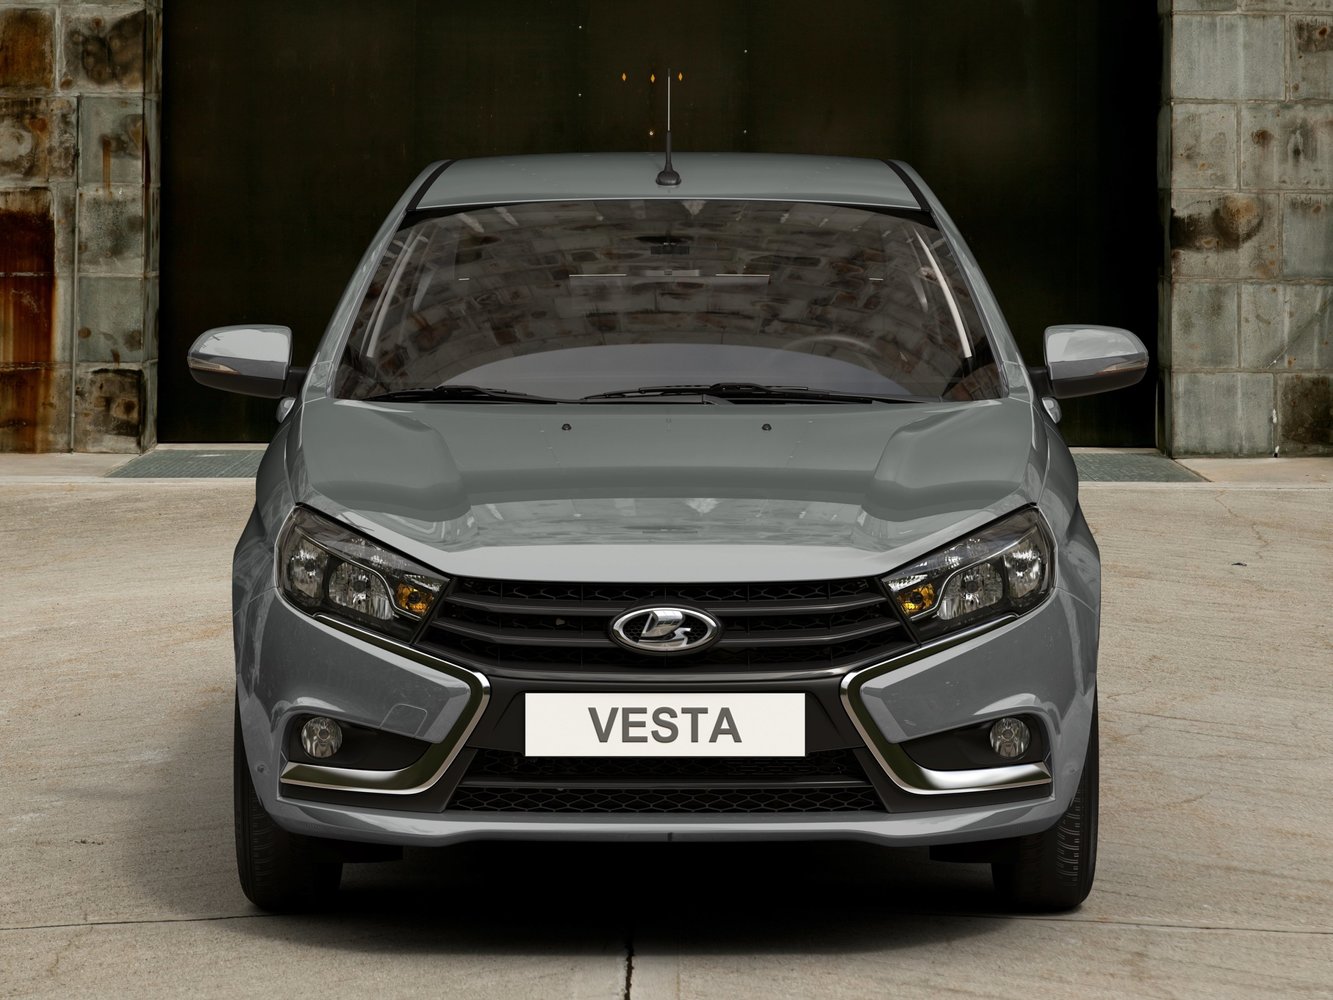 седан ВАЗ (Lada) Vesta 2015 - 2016г выпуска модификация classic 1.6 MT (106 л.с.)